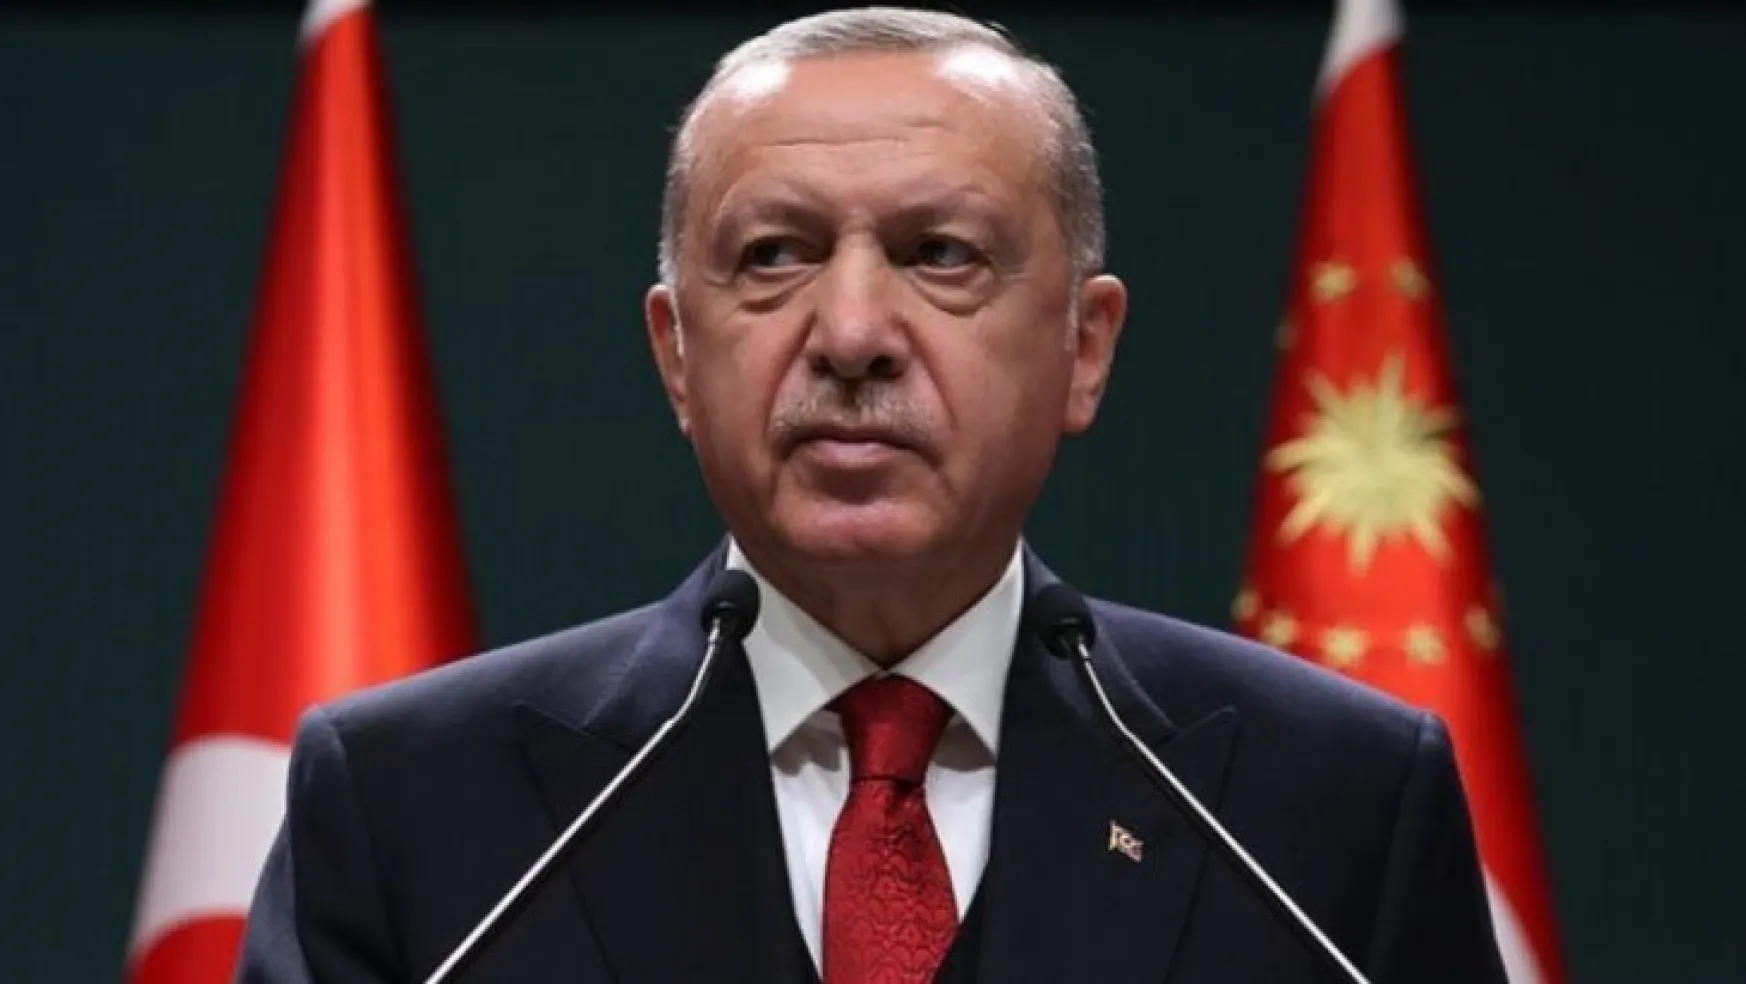 Erdoğan: İkinci çeyreği ciddi bir büyüme ile kapatacağız